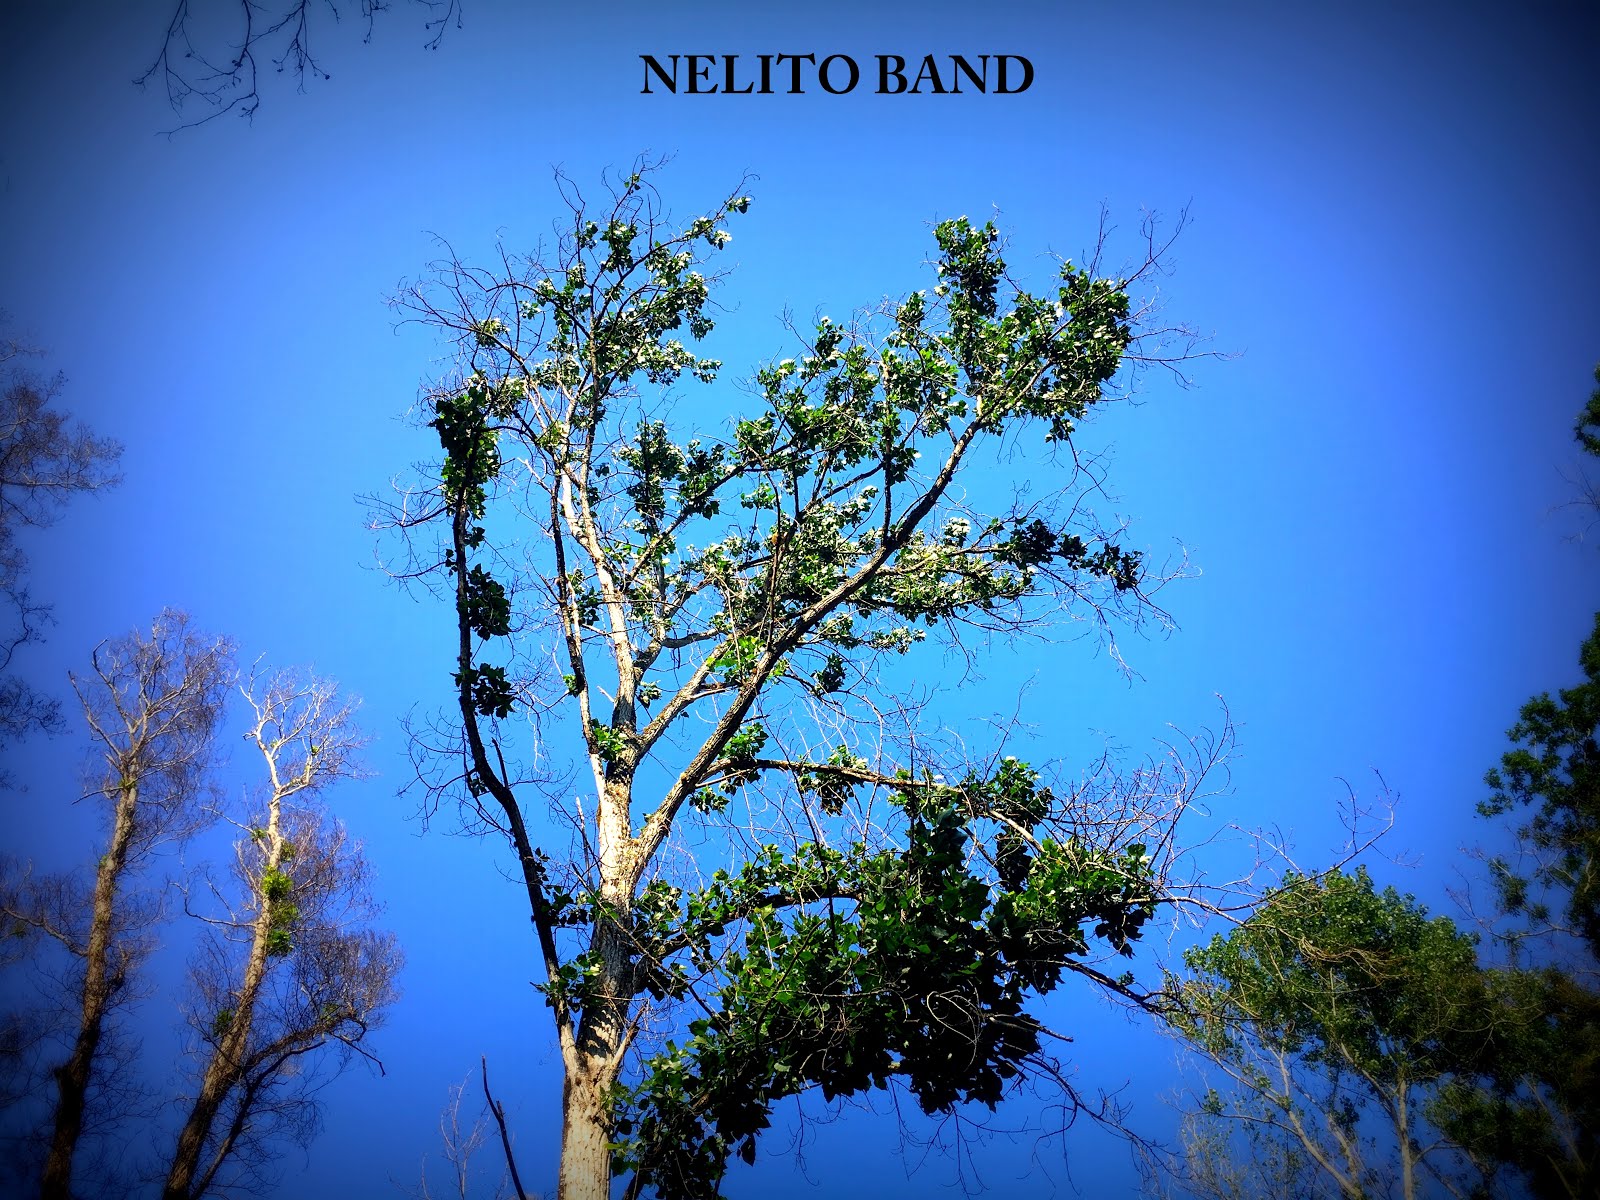 NELITO BAND - 2018